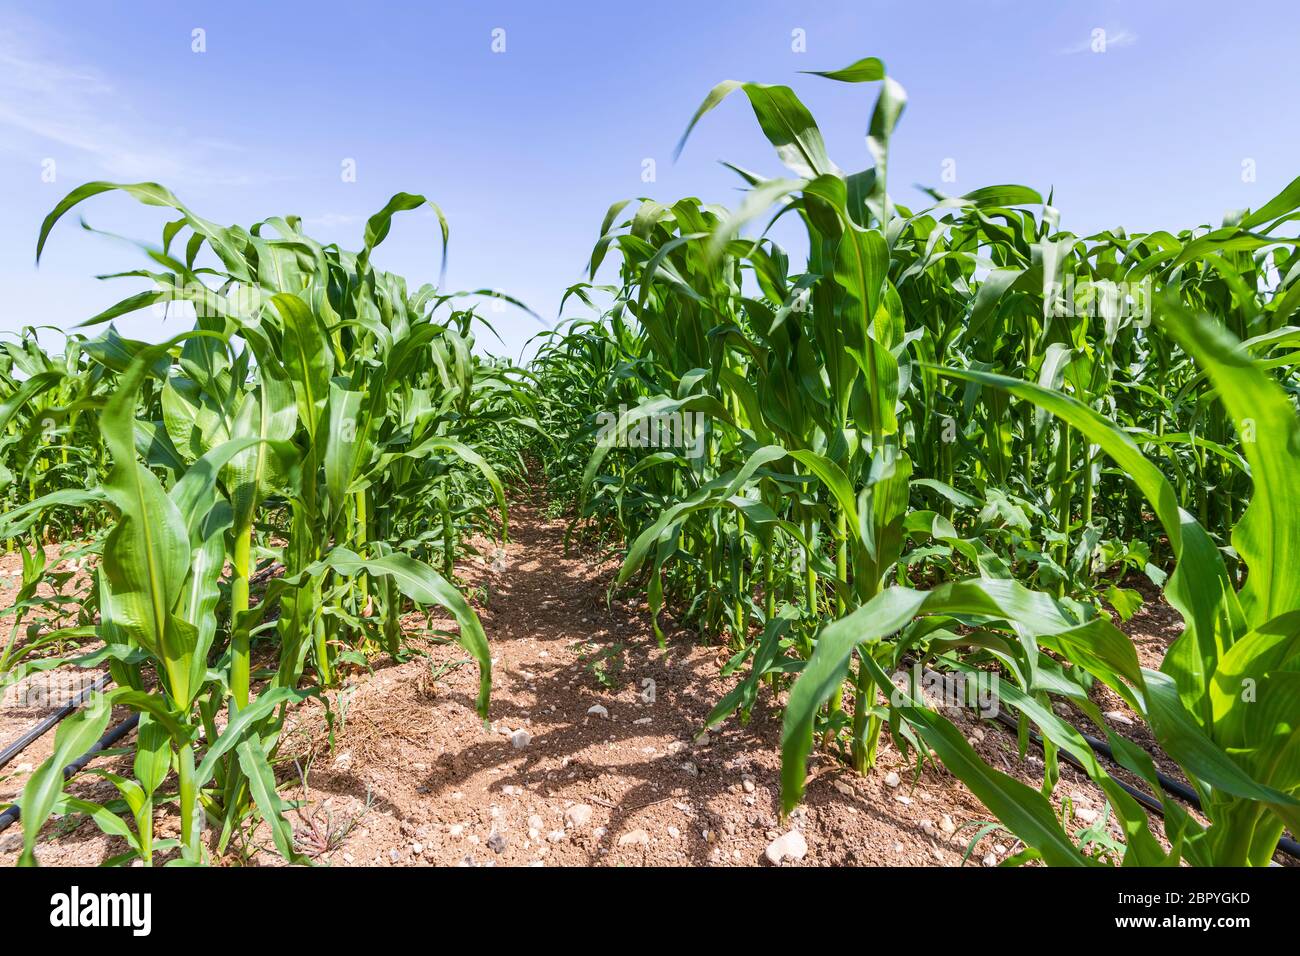 Reihen von jungen grünen Maissprossen auf einem landwirtschaftlichen Feld Stockfoto